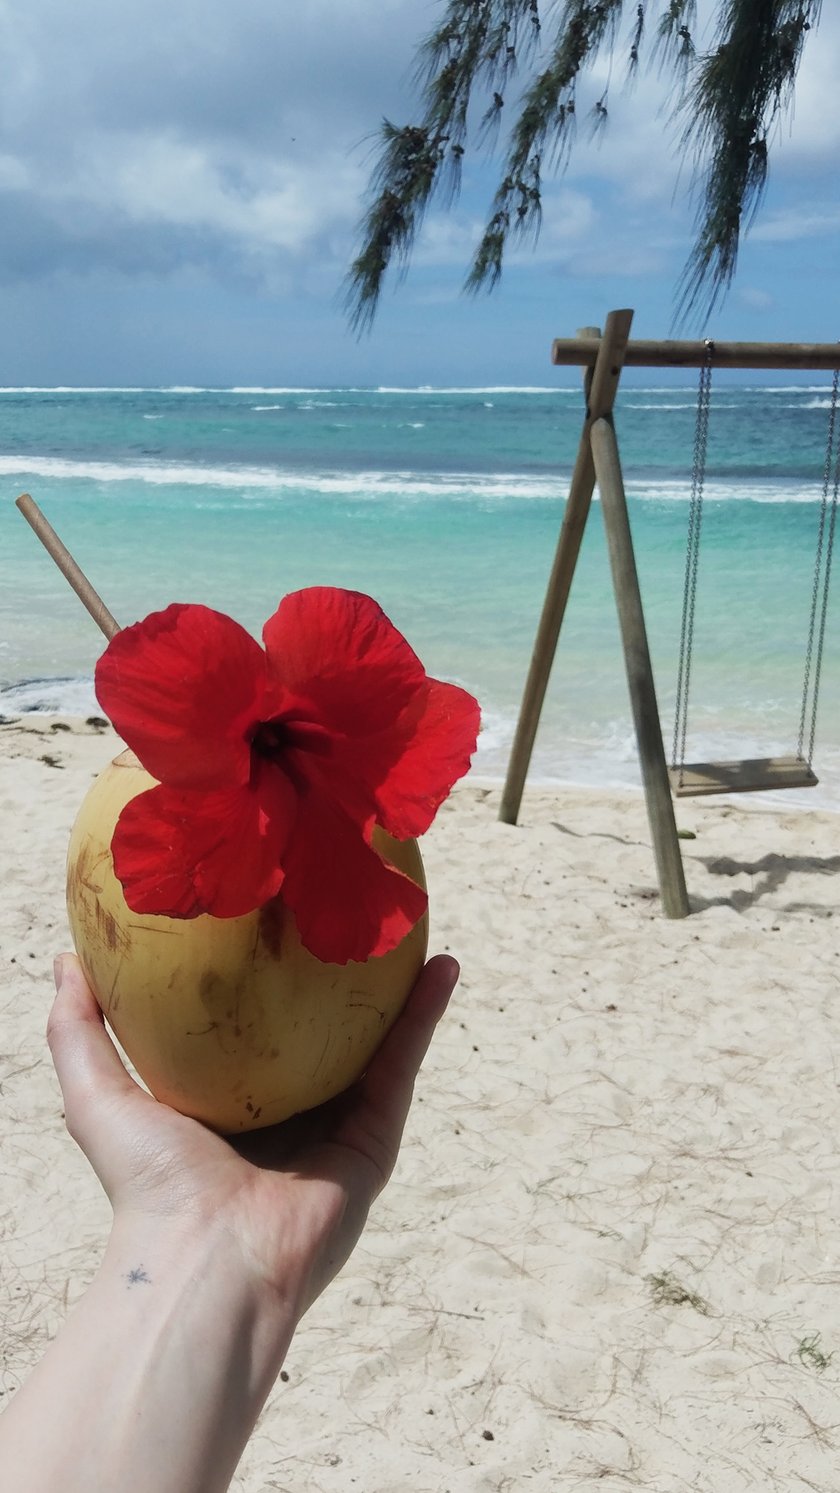 Kokosnuss Strand Mauritius Schaukel